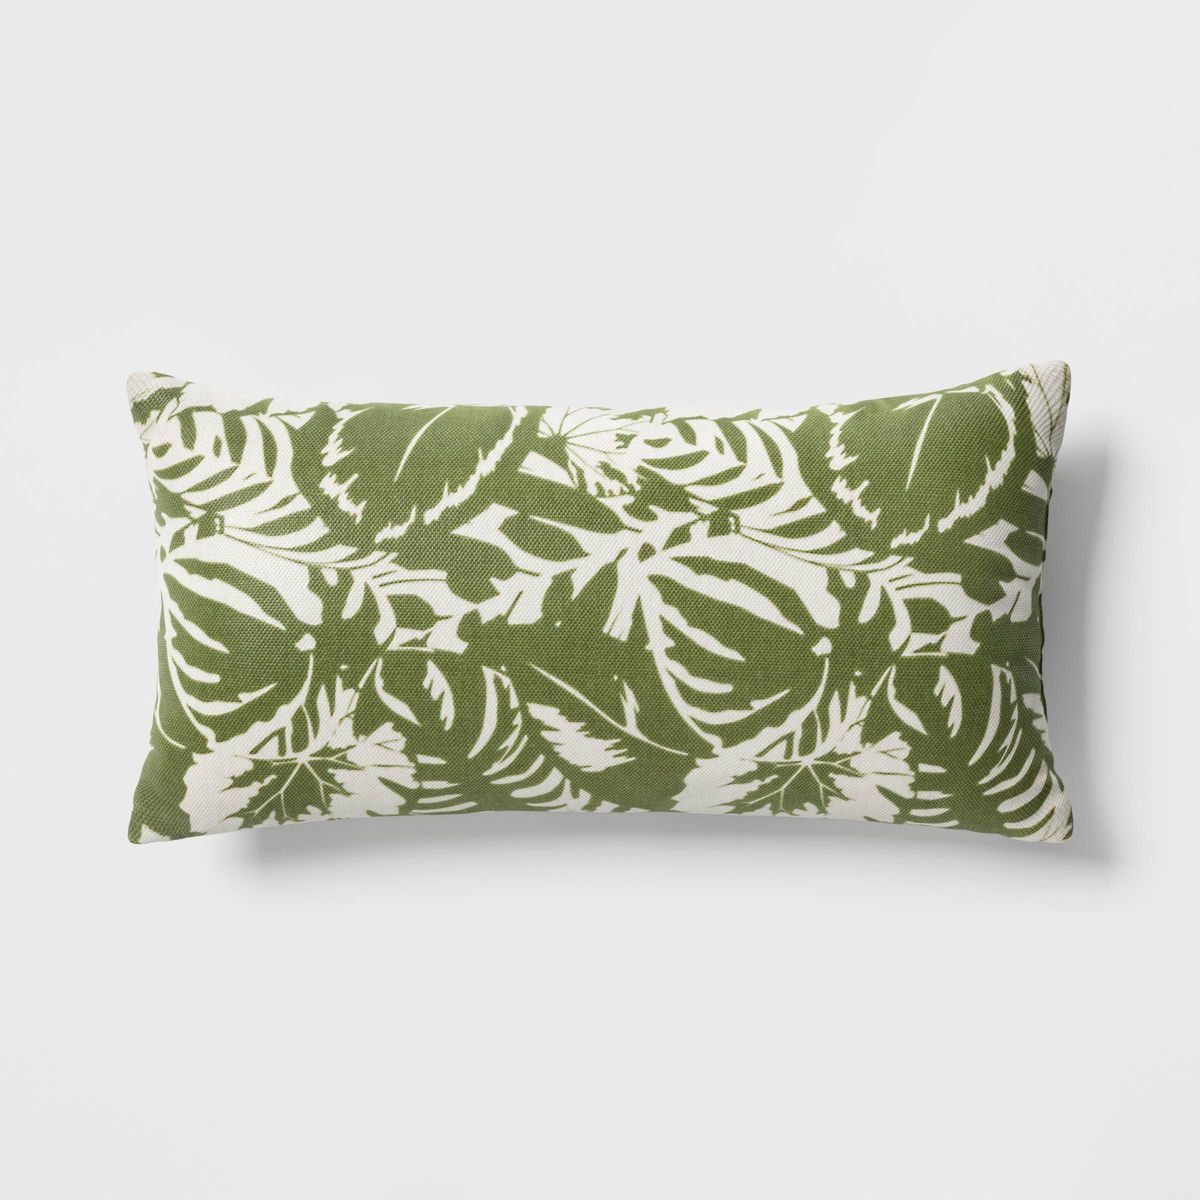 12"x24" Tropical Foliage Rectangular Outdoor Lumbar Pillow Green - Threshold™ | Target